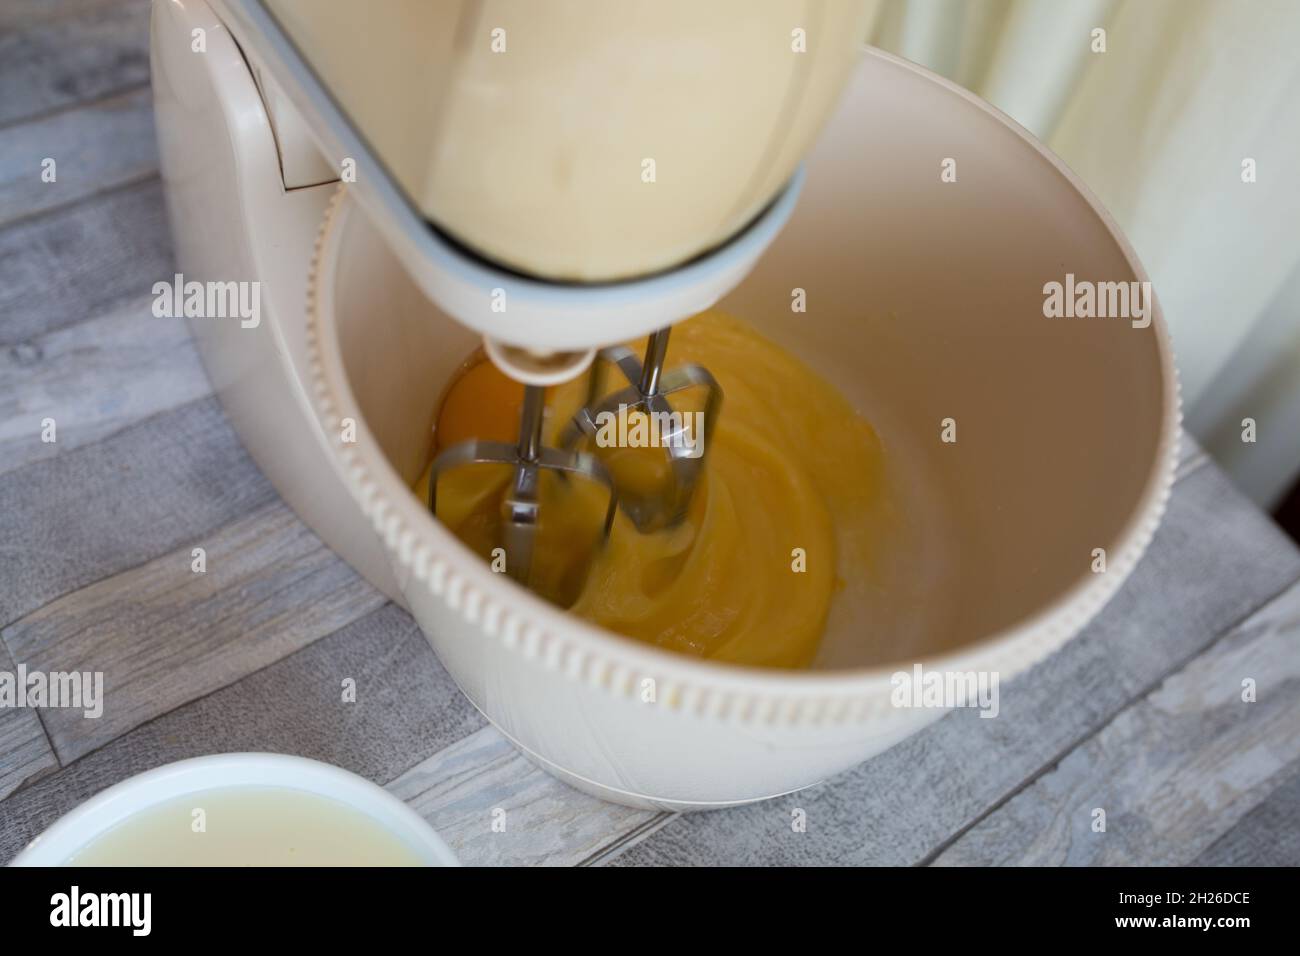 Der Prozess der Herstellung einer sauren Sahneschokolade Kuchen. Teigvorbereitung. Die Eier werden in einer Rührschüssel geschlagen. Schritt für Schritt Rezept für Schokoladenkuchen. Bak Stockfoto